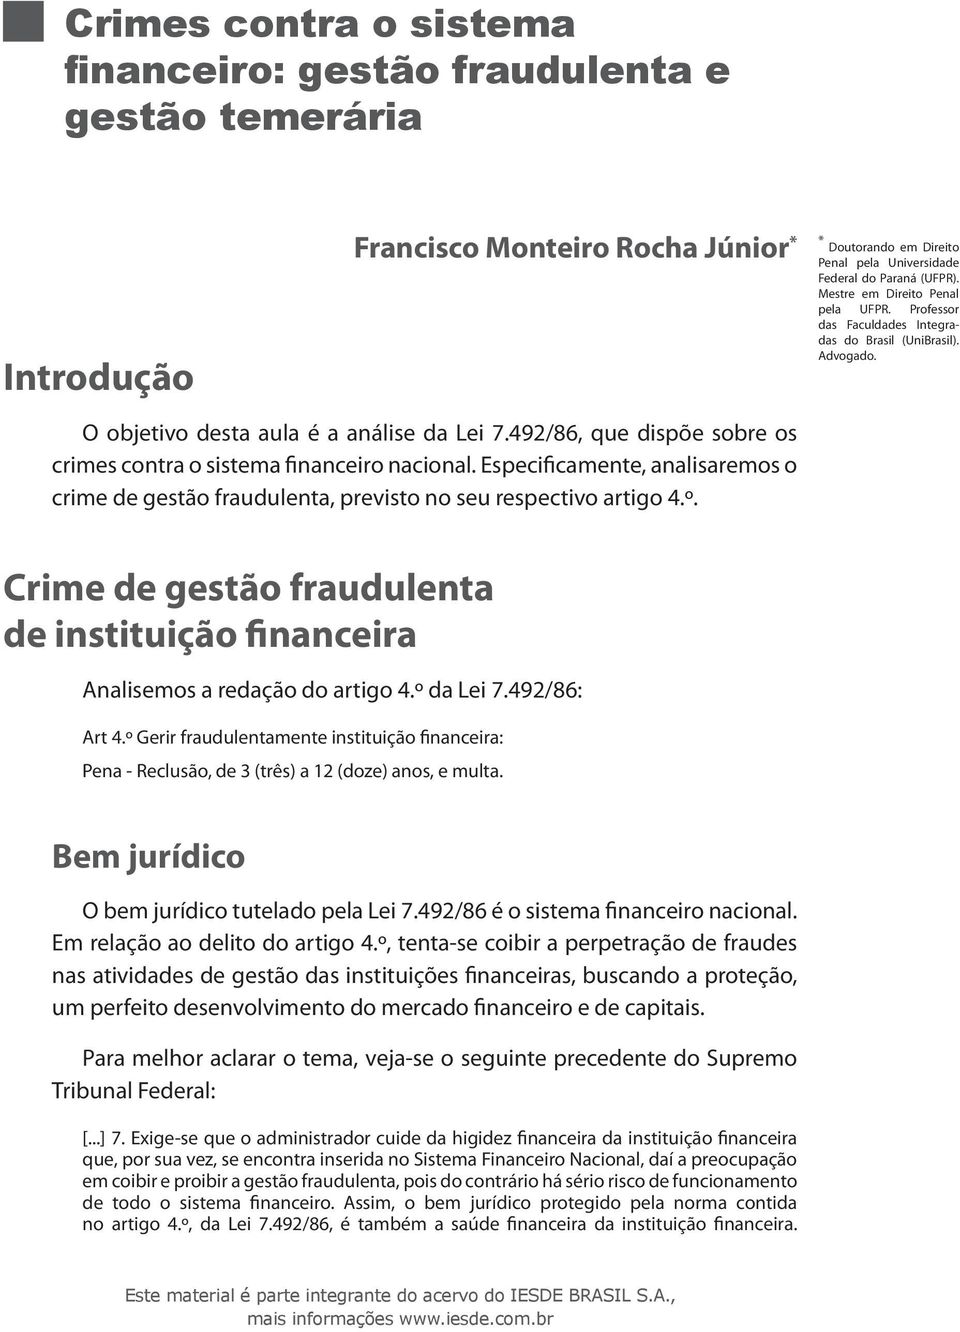 * Doutorando em Direito Penal pela Universidade Federal do Paraná (UFPR). Mestre em Direito Penal pela UFPR. Professor das Faculdades Integradas do Brasil (UniBrasil). Advogado.